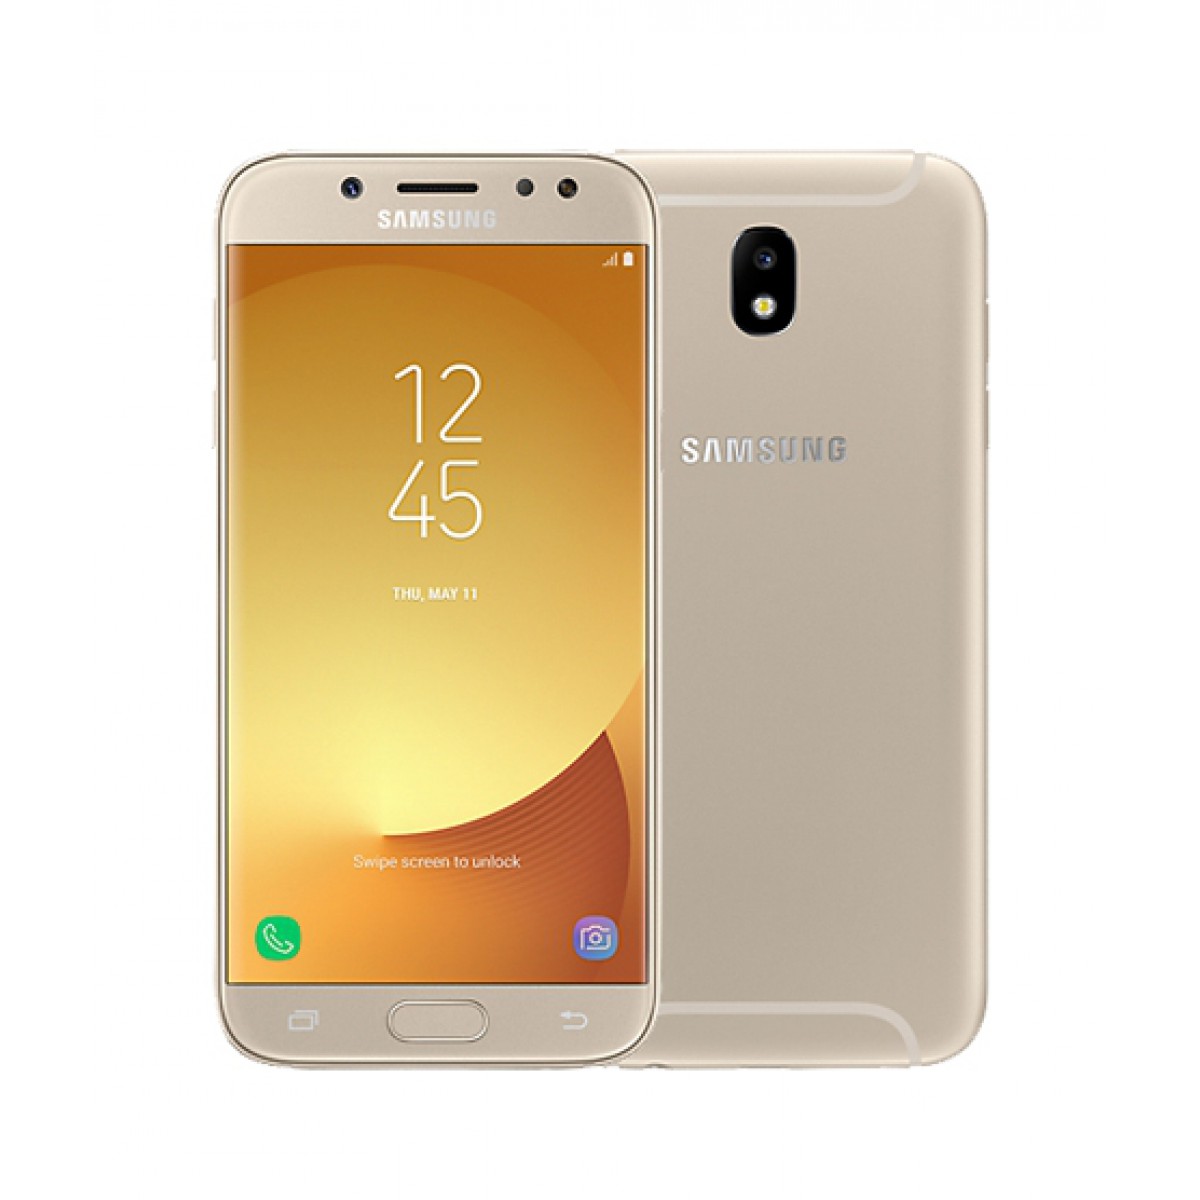 Смартфон Samsung Galaxy J5 Pro получил больше памяти